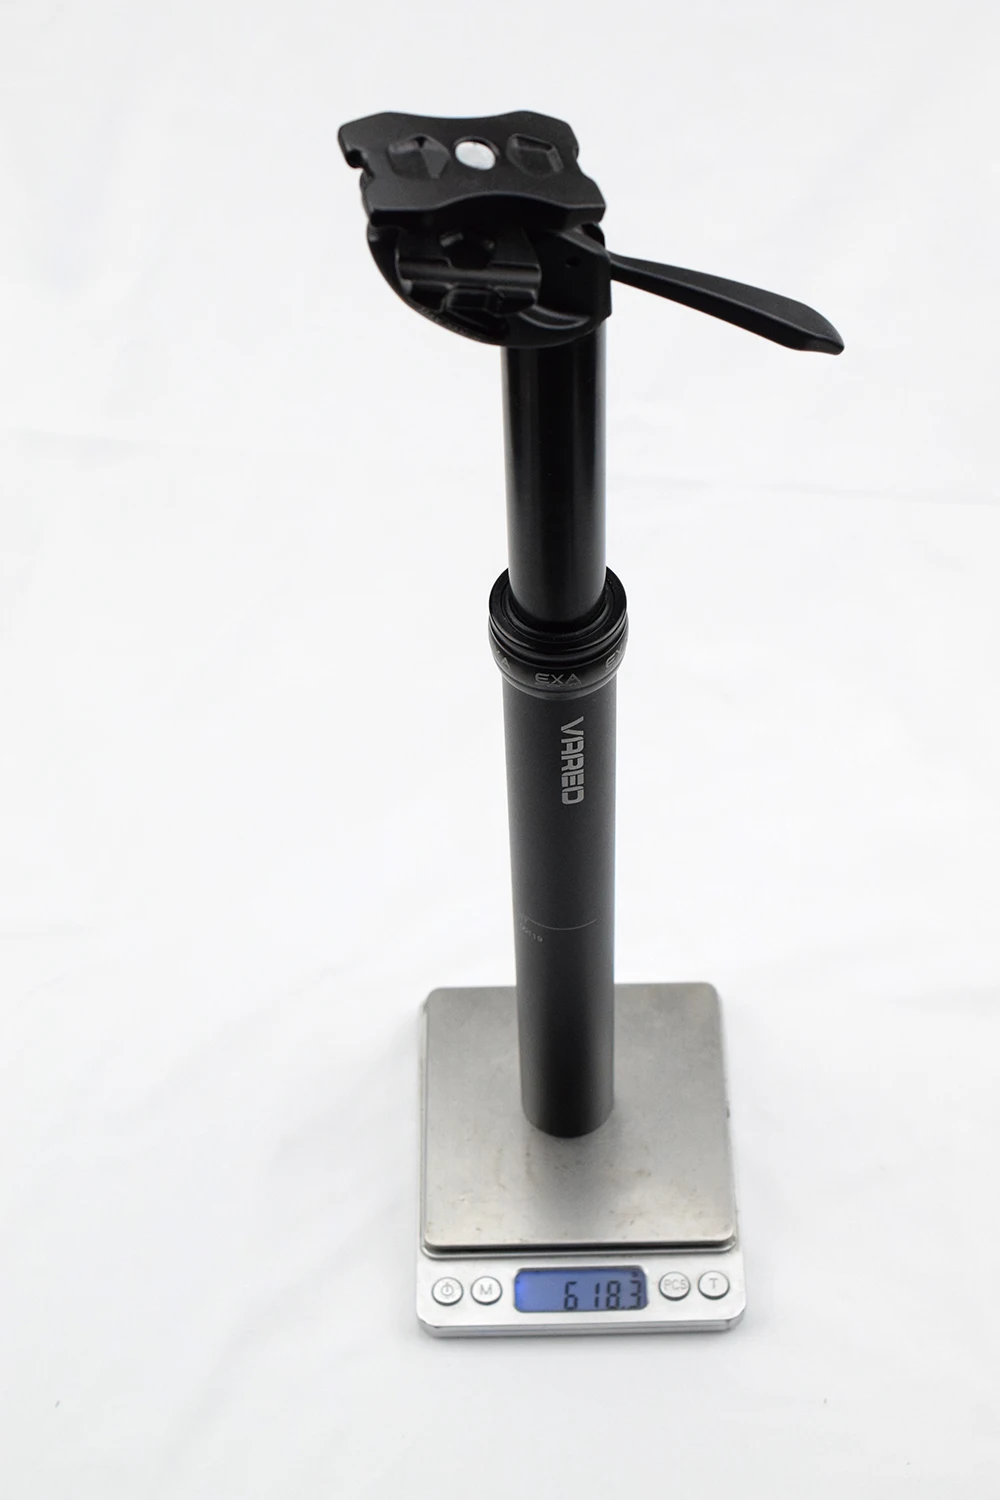 KS EXA 27,2 30,9 31,6 мм рычаг дистанционного управления стойка сидения для горного велосипеда велосипедная Подвеска для горного велосипеда MTB велосипедный Регулируемый подседельный штырь